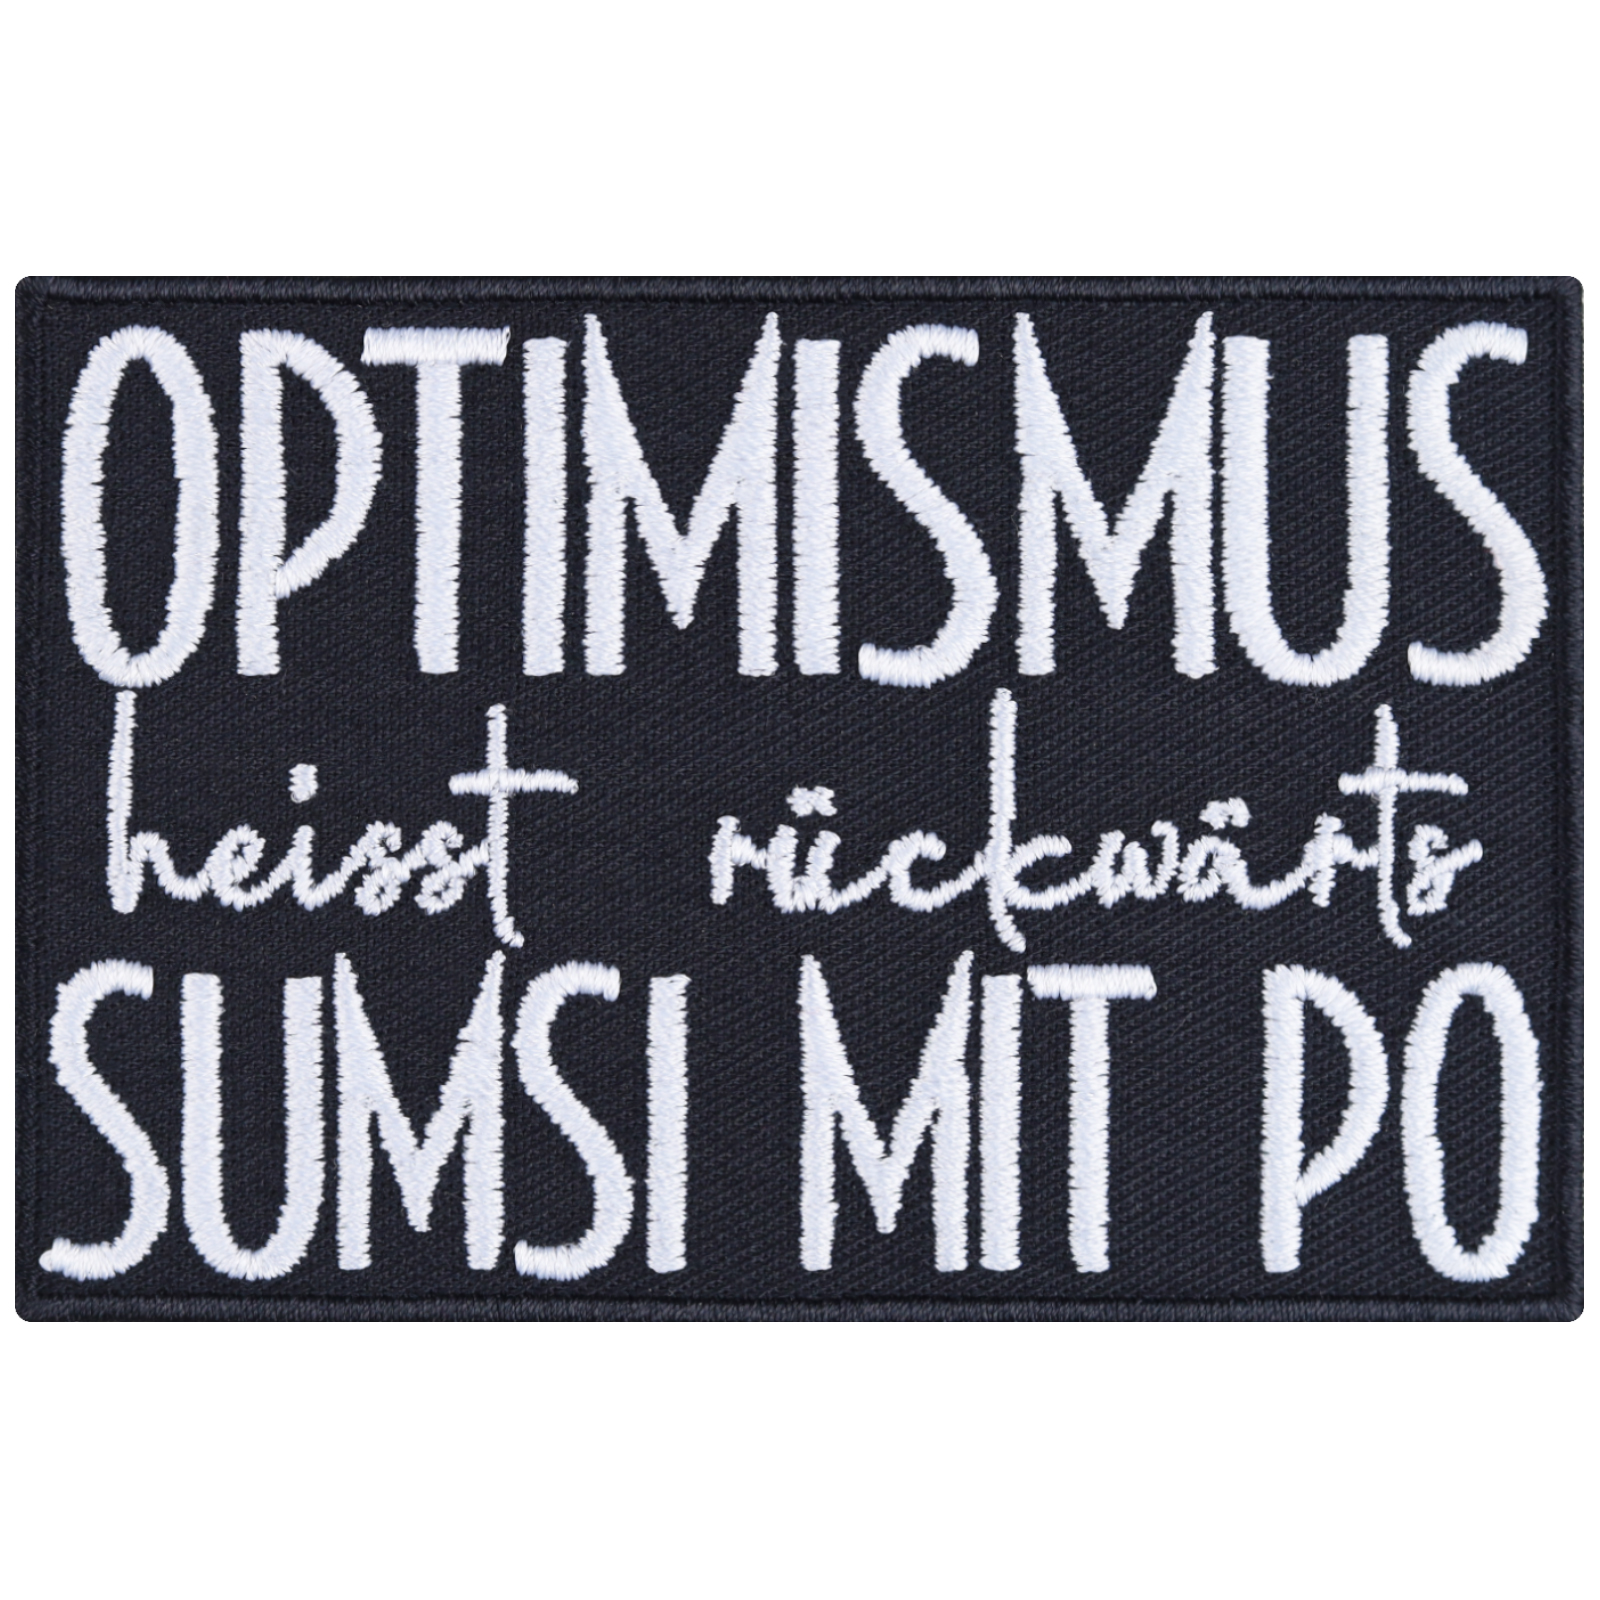 Optimismus heißt rückwärts Sumsi mit Po - Patch